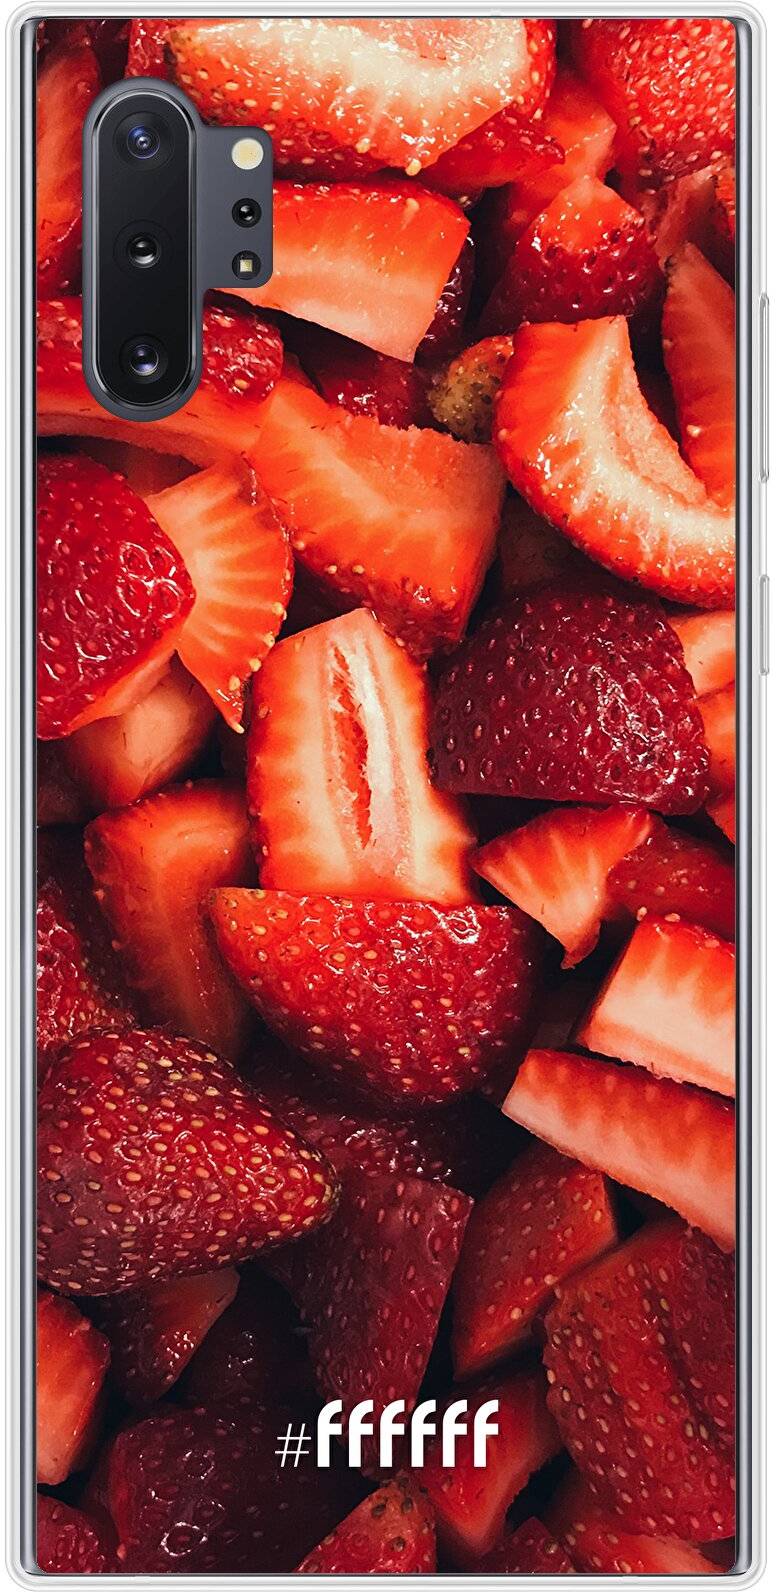 Strawberry Fields Galaxy Note 10 Plus